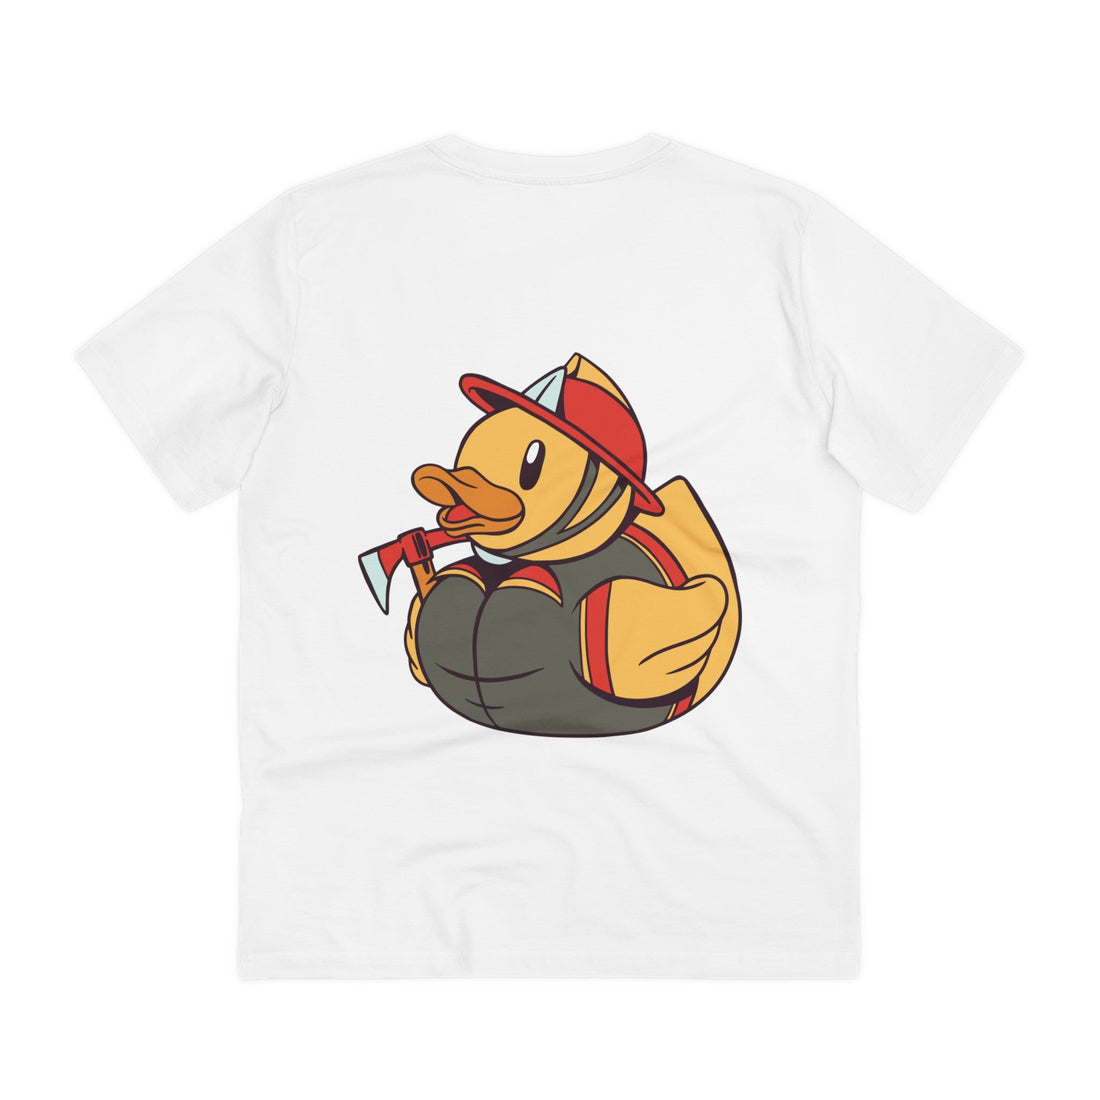 Printify T-Shirt White / 2XS Fireman - Rubber Duck - Back Design